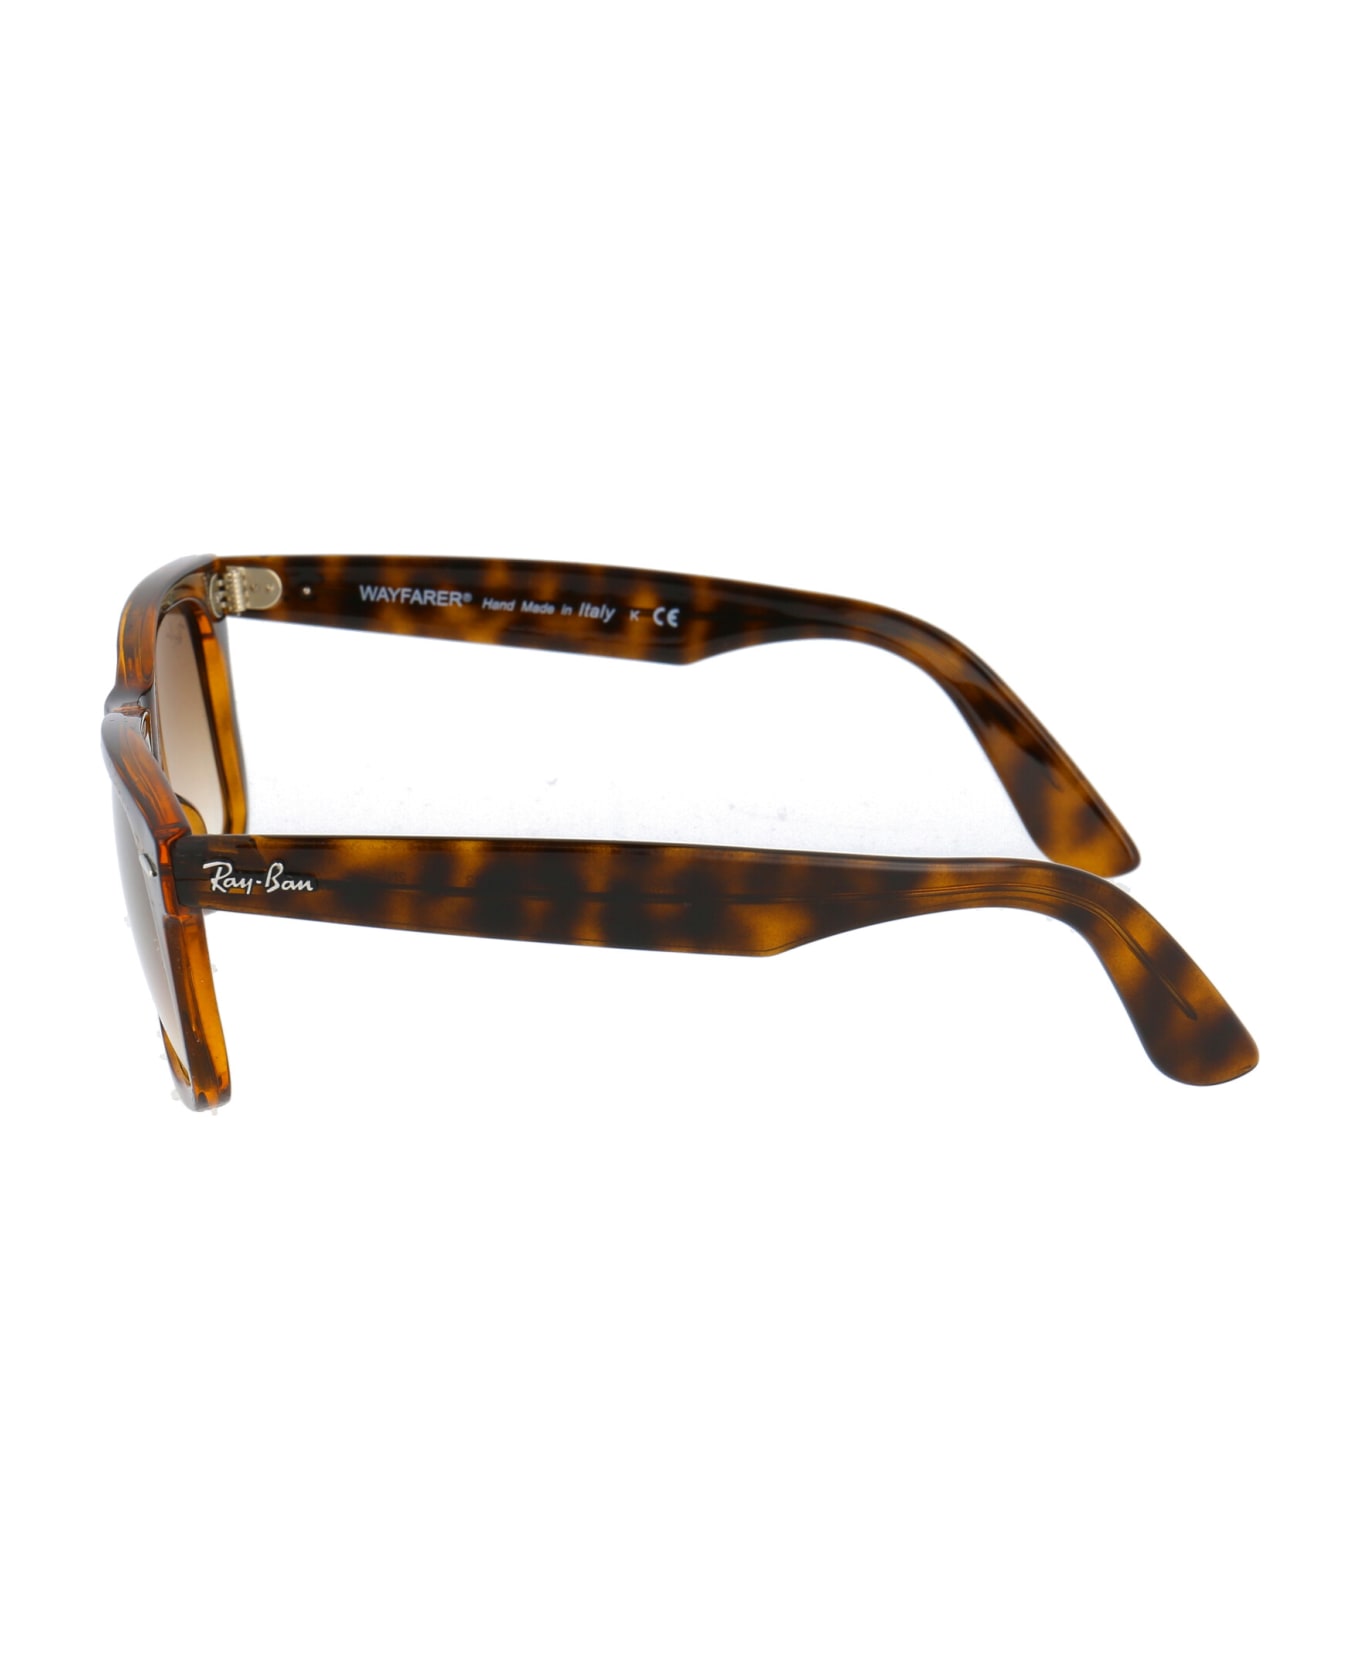 Ray-Ban Wayfarer Ease Sunglasses - 710/51 LIGHT HAVANA